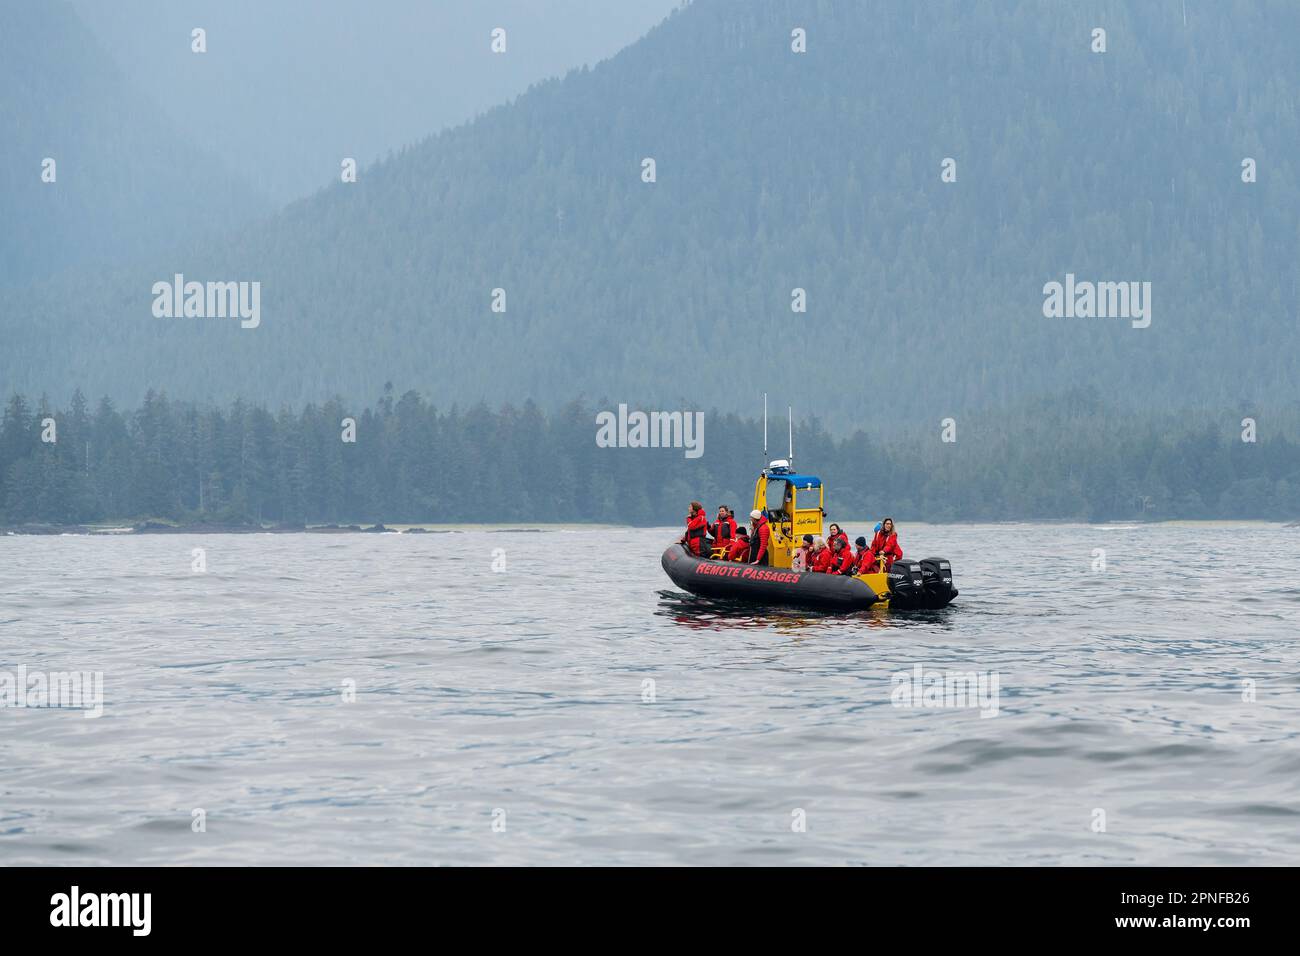 Gommone rigido con scafo e turisti in tour di avvistamento delle balene al largo della costa di Vancouver Island, British Columbia, Canada. Foto Stock